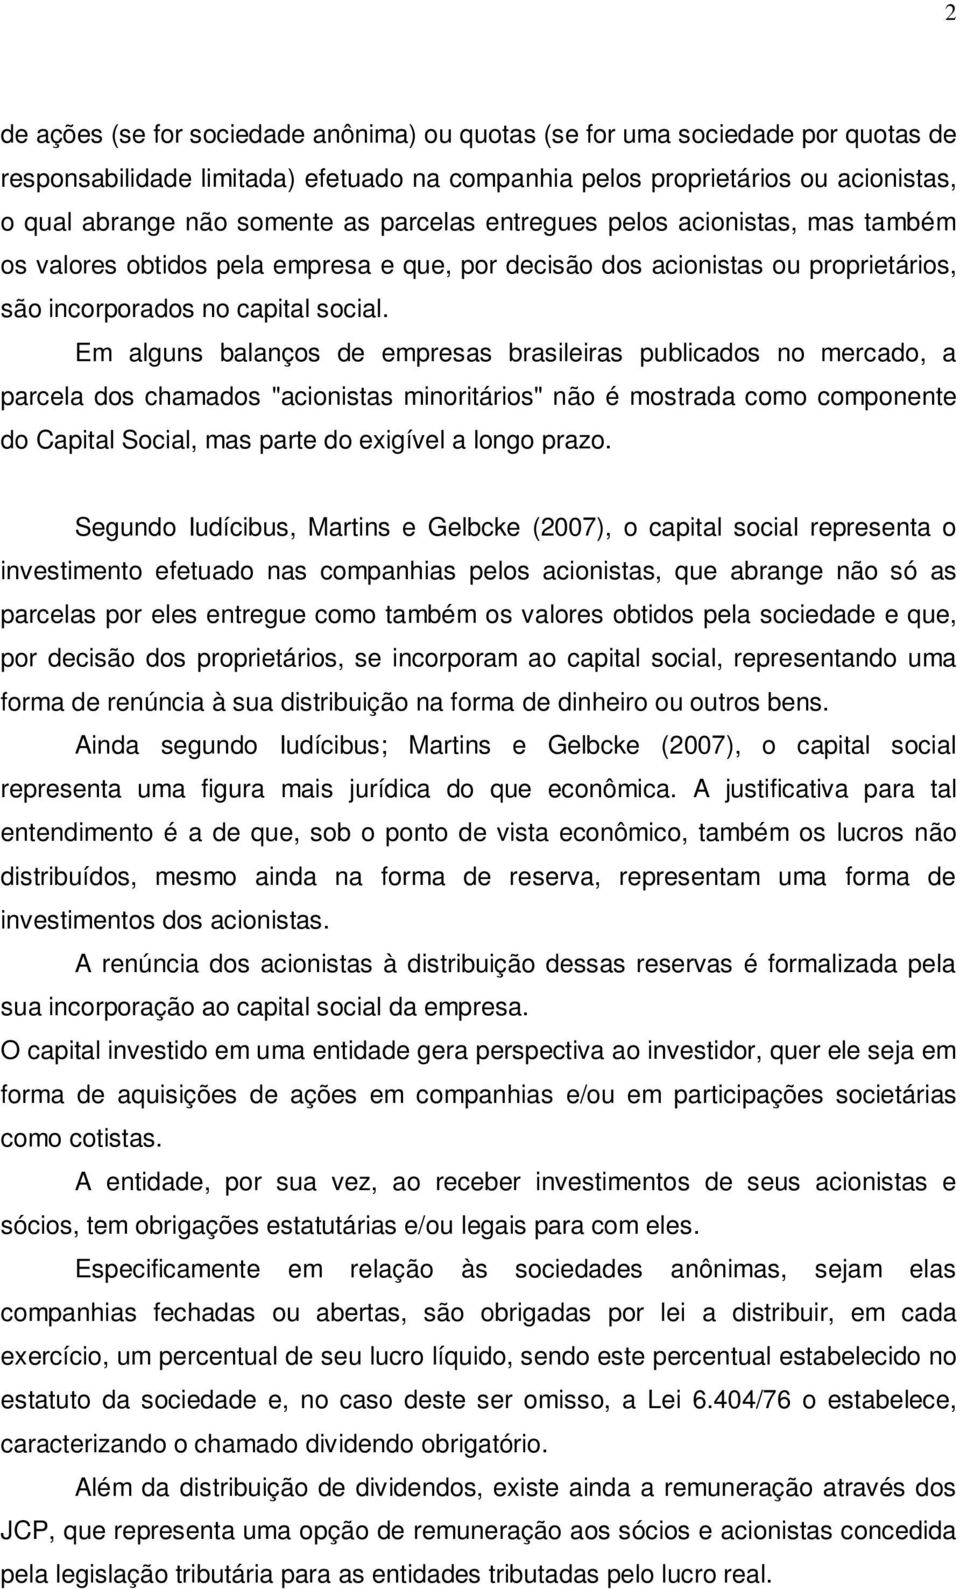 Em alguns balanços de empresas brasileiras publicados no mercado, a parcela dos chamados "acionistas minoritários" não é mostrada como componente do Capital Social, mas parte do exigível a longo